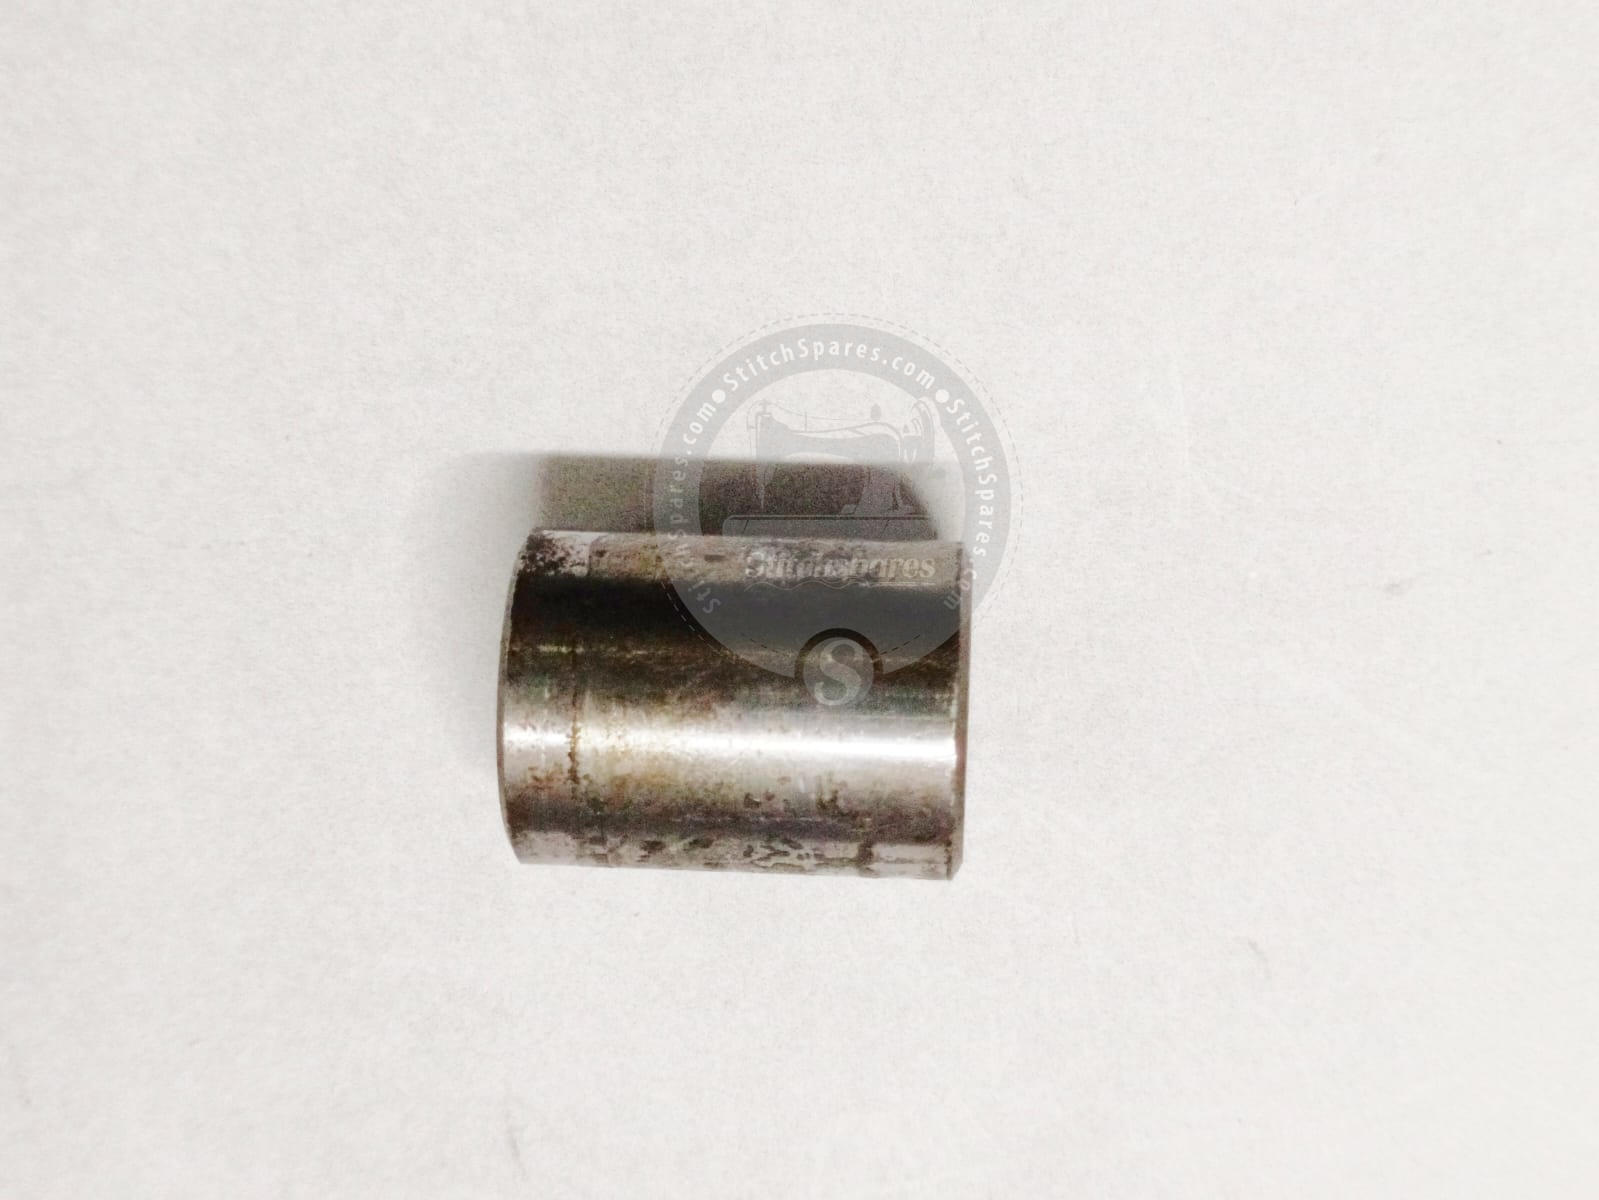 Buje de perno de palanca de aguja 81-412 (KANSAI SPECIAL ORIGINAL) para KANSAI SPECIAL DFB, DLR, DVK, B2000C Series pieza de repuesto para máquina de coser